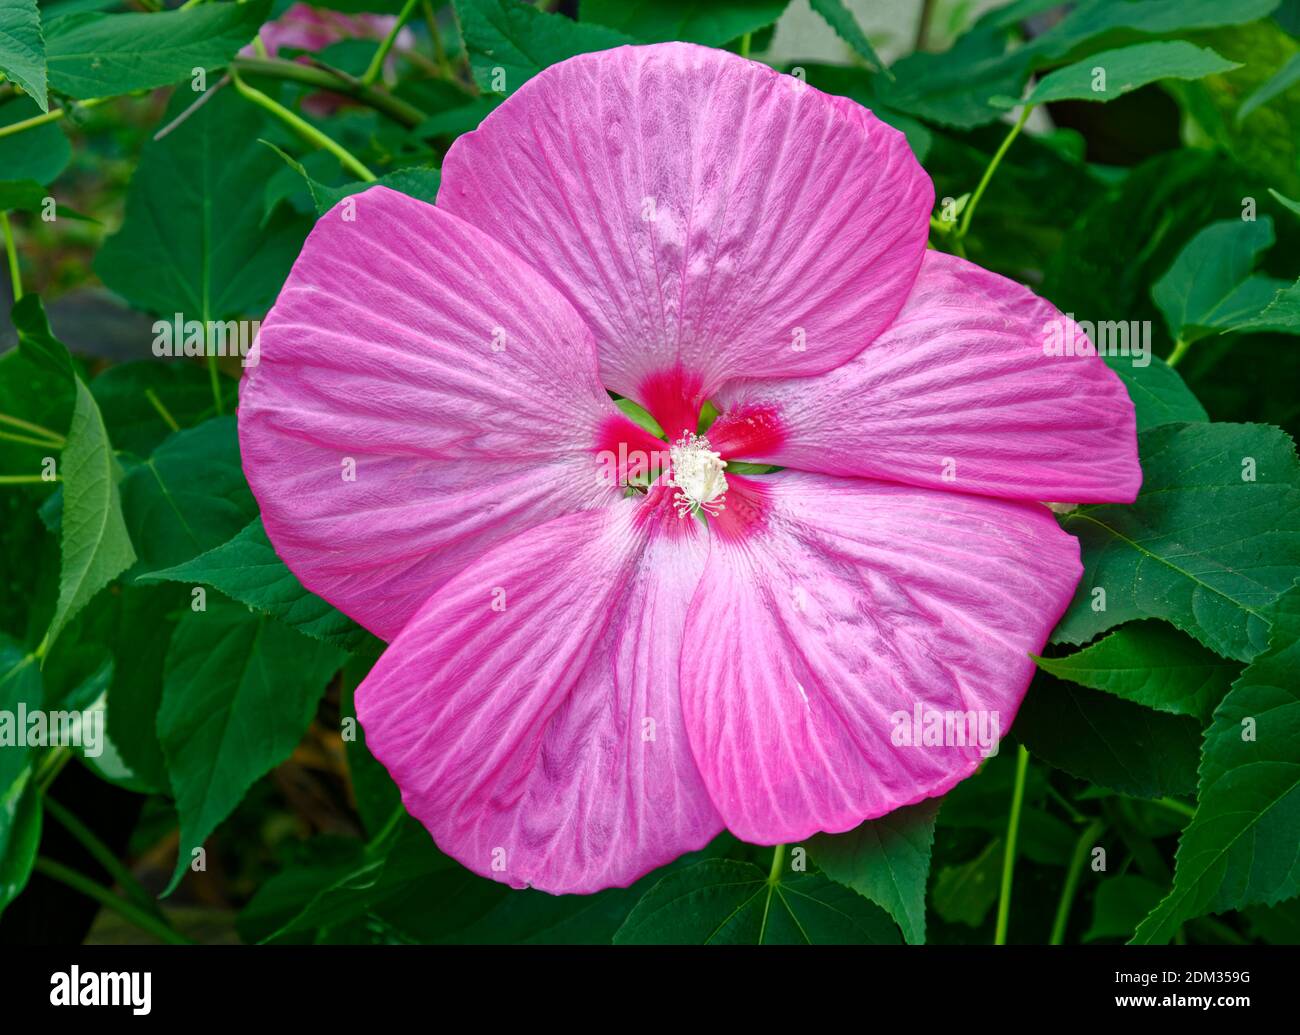 Hibiscus rose; fleur cultivée; centre rose; stigmatisation de la crème; Malvaceae; insecte, Pennsylvanie; été; place Kennett; PA Banque D'Images